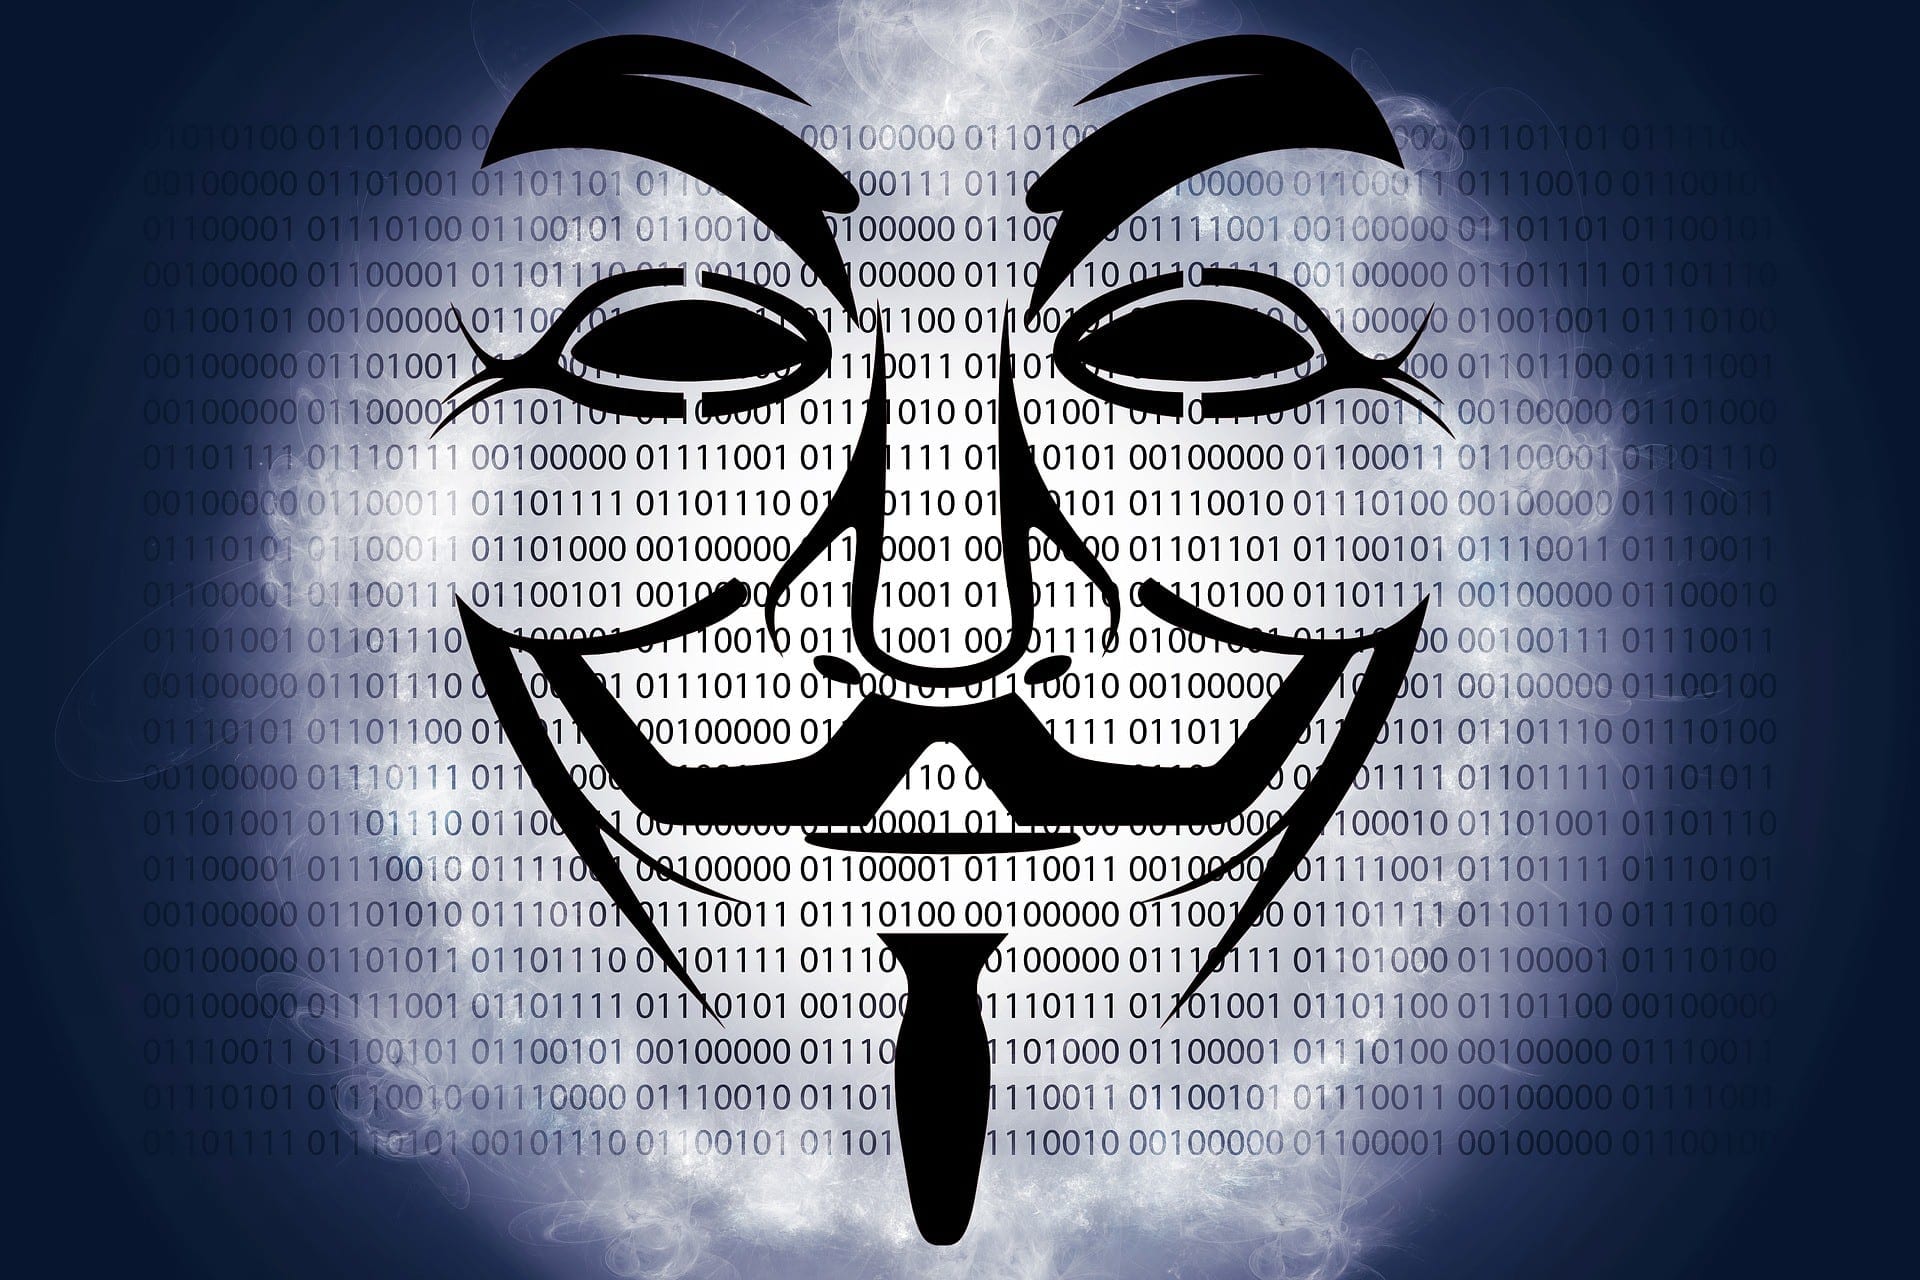 Ethereum een stuk minder anoniem dan Bitcoin volgens nieuw rapport